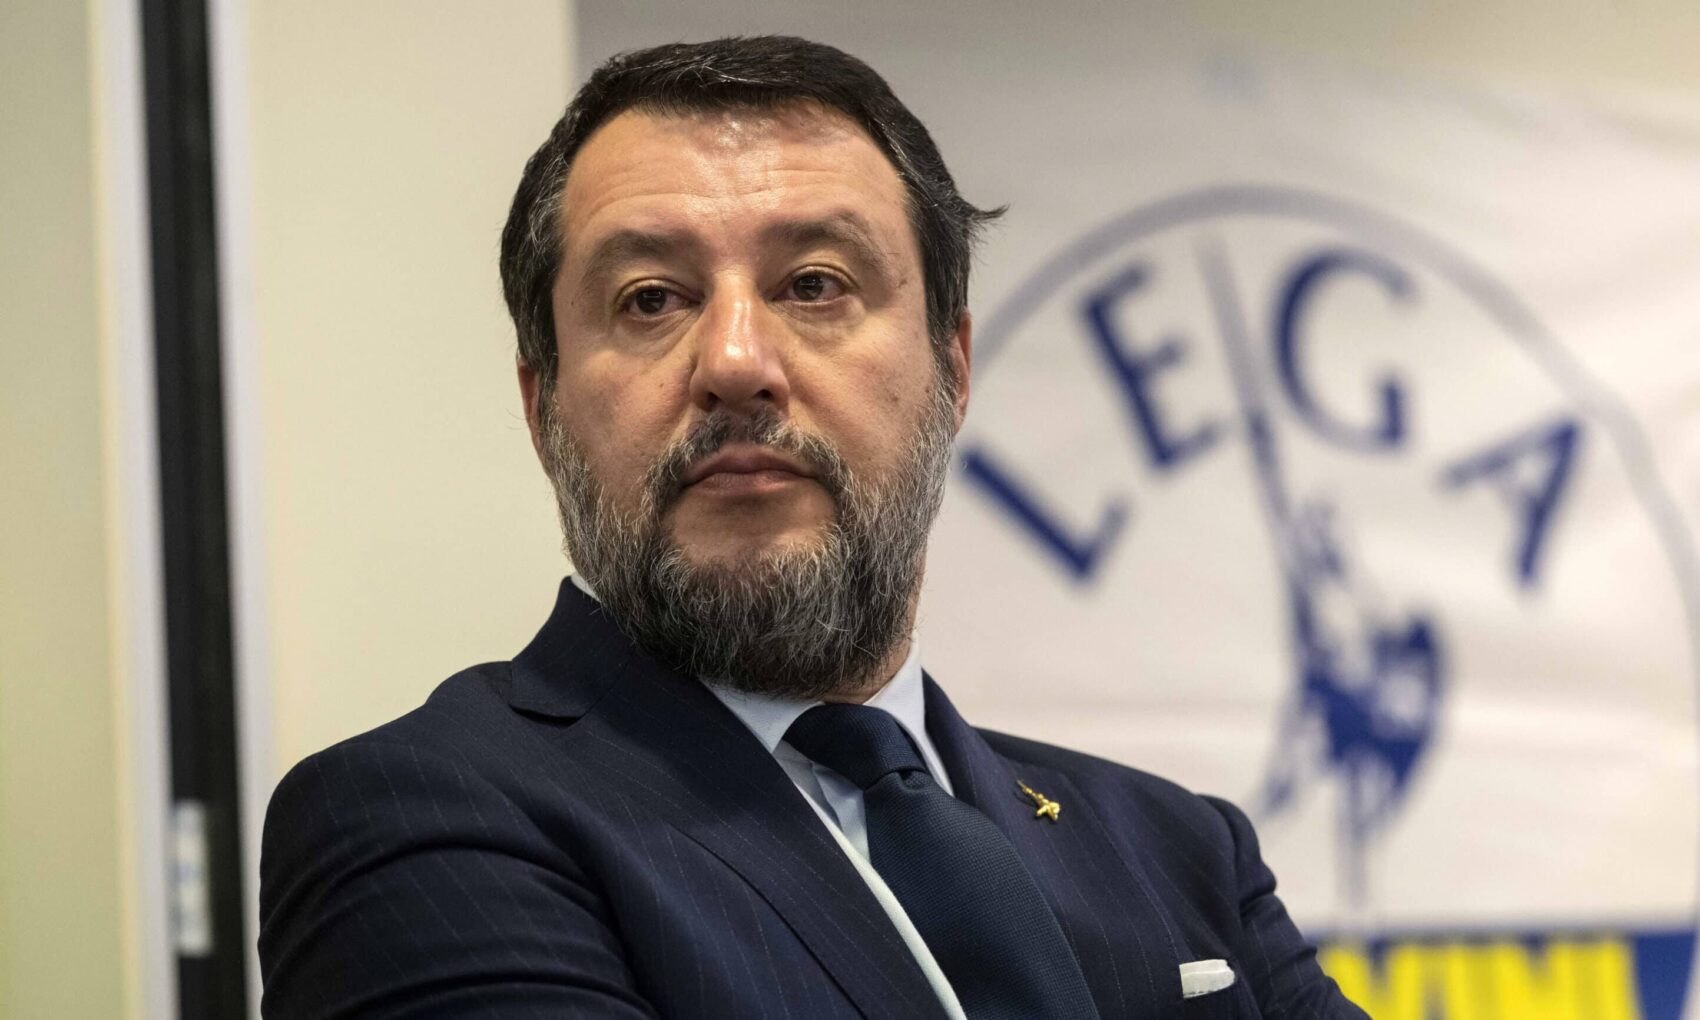 Il Senato nega l’autorizzazione a procedere contro Salvini: sue parole su Carola Rackete “insindacabili”